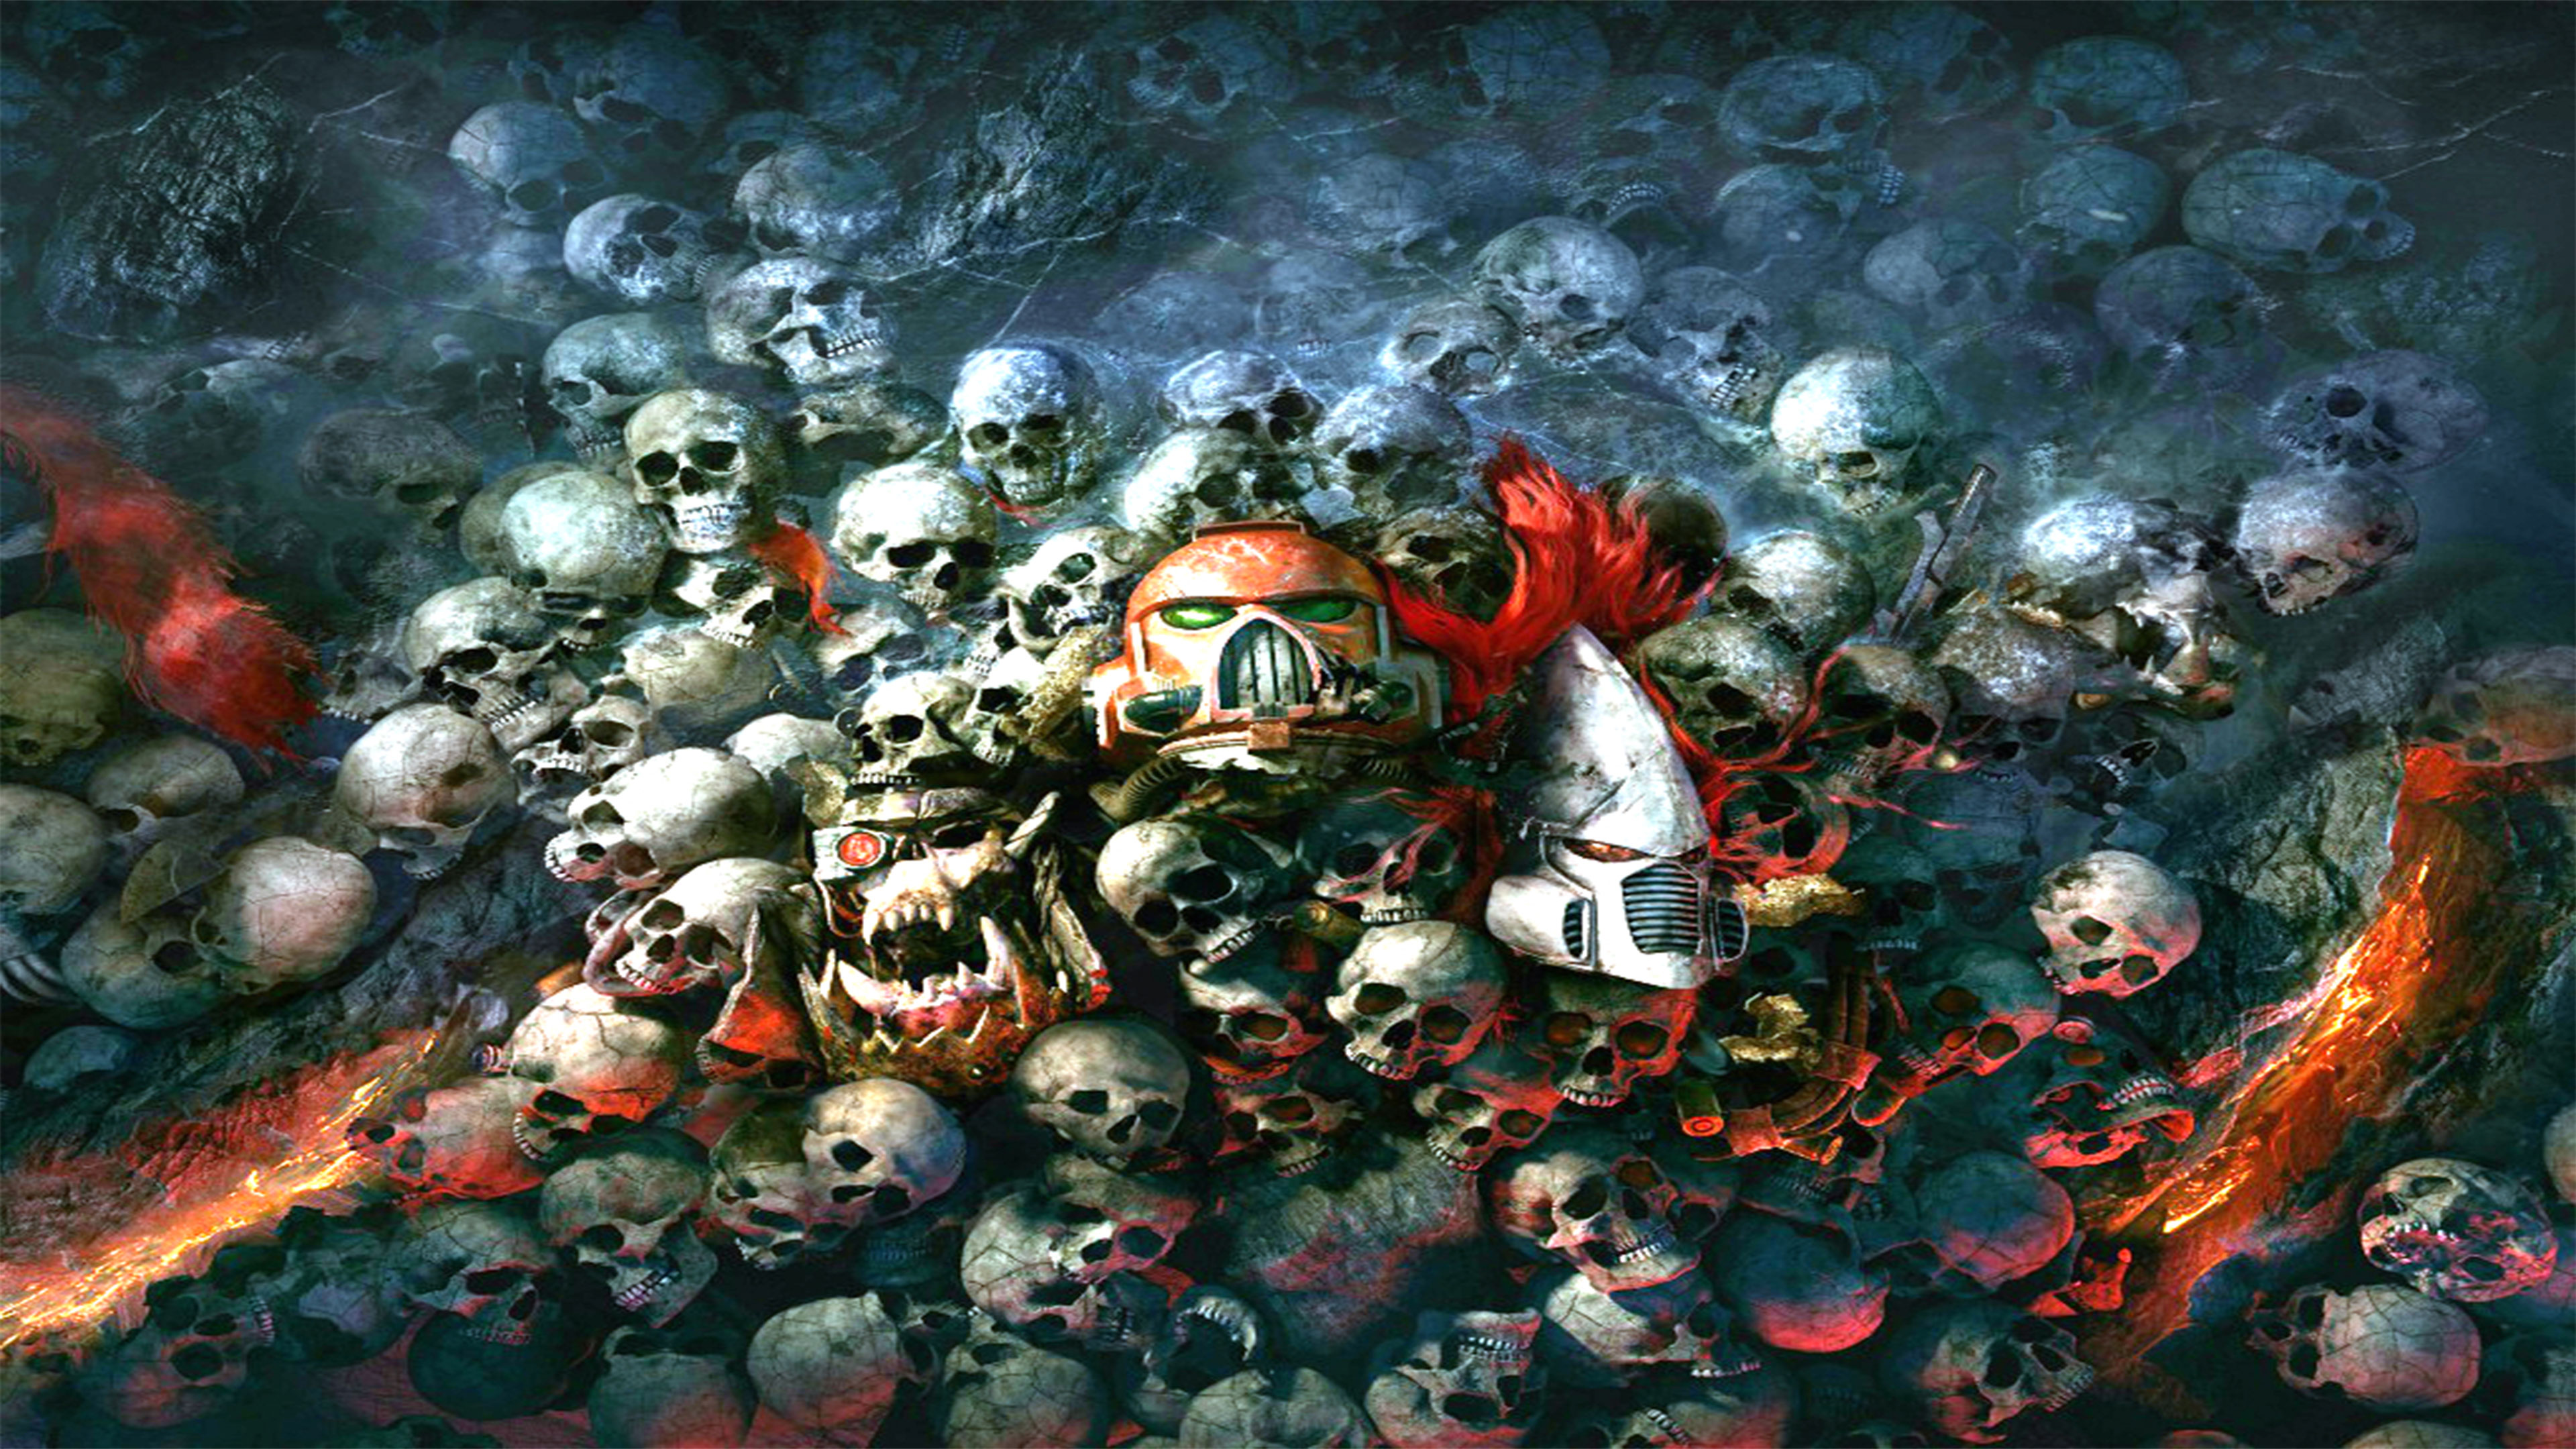 High Resolution Wallpaper | Warhammer 40,000: Dawn Of War III 3840x2160 px